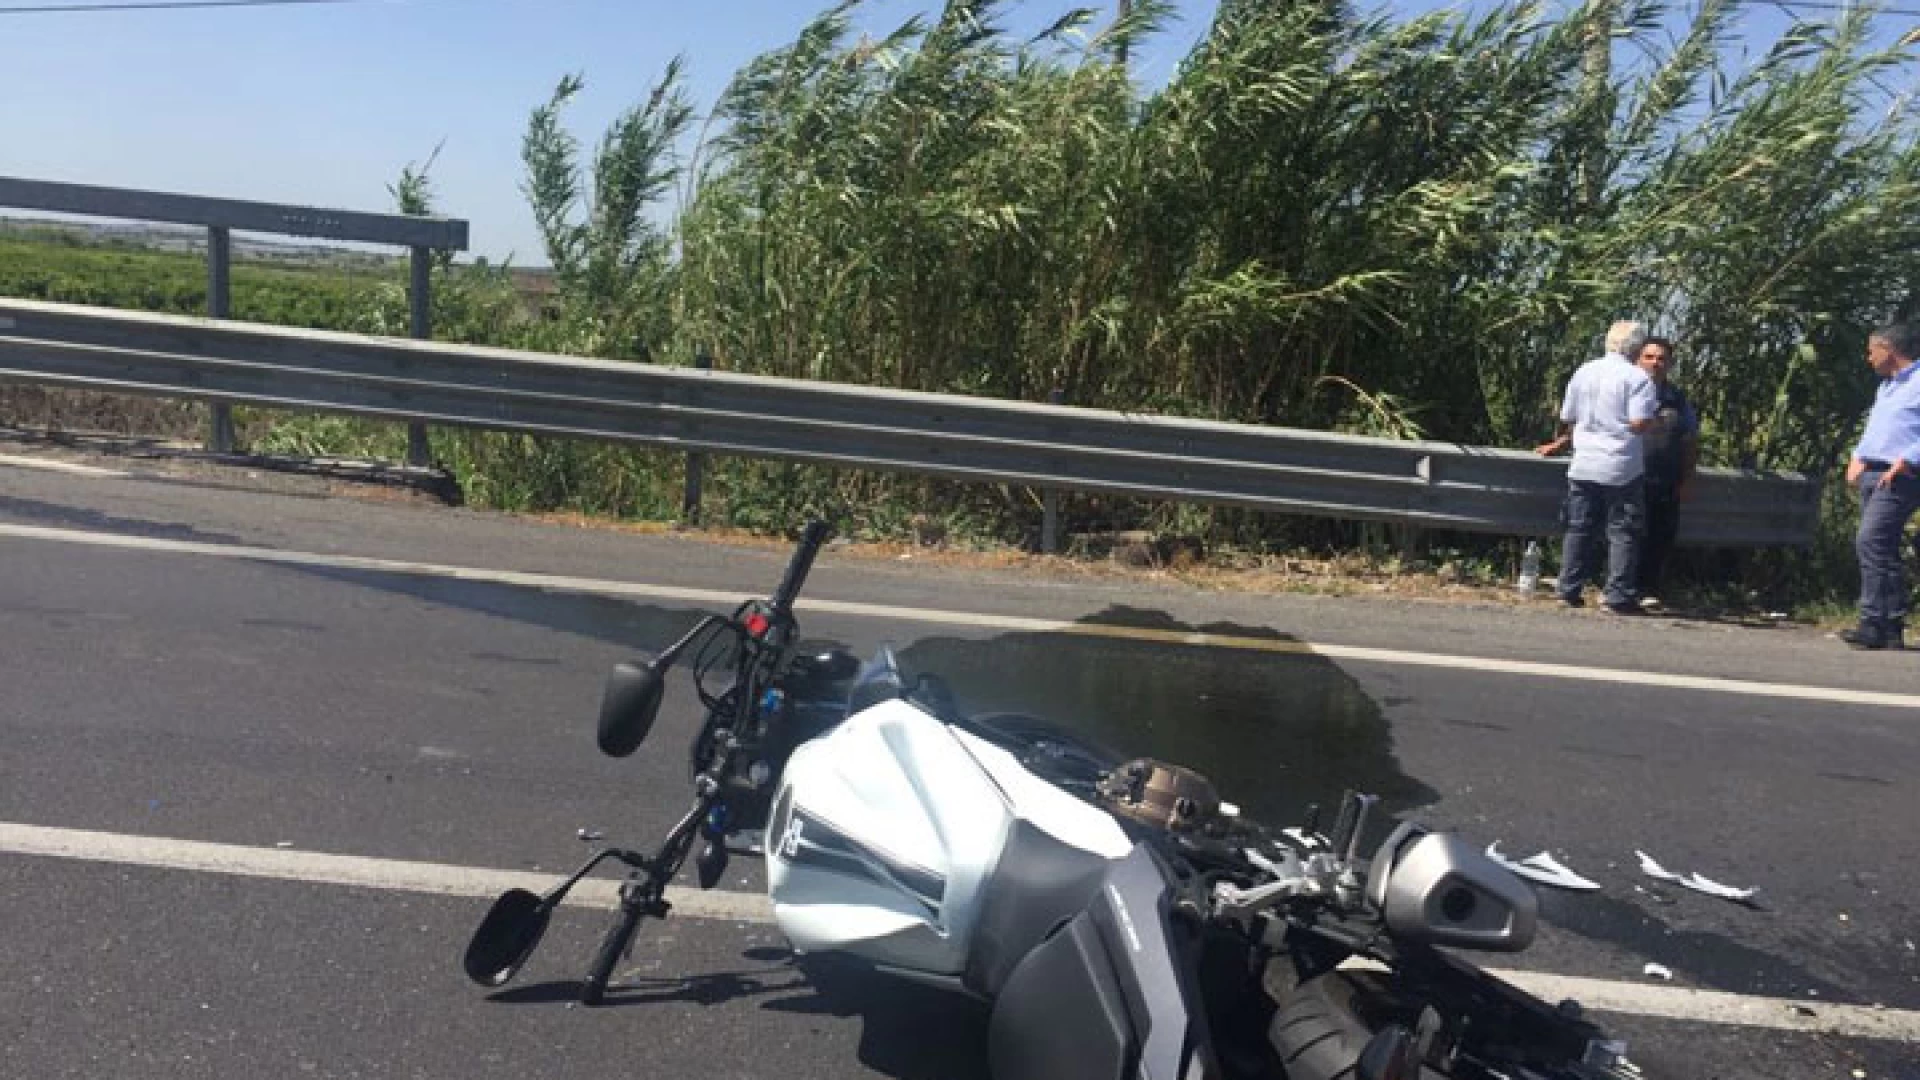 Napoli: grave incidente sulla tangenziale cittadina. Muora motociclista originario di Campobasso. Per lui inutili i soccorsi.